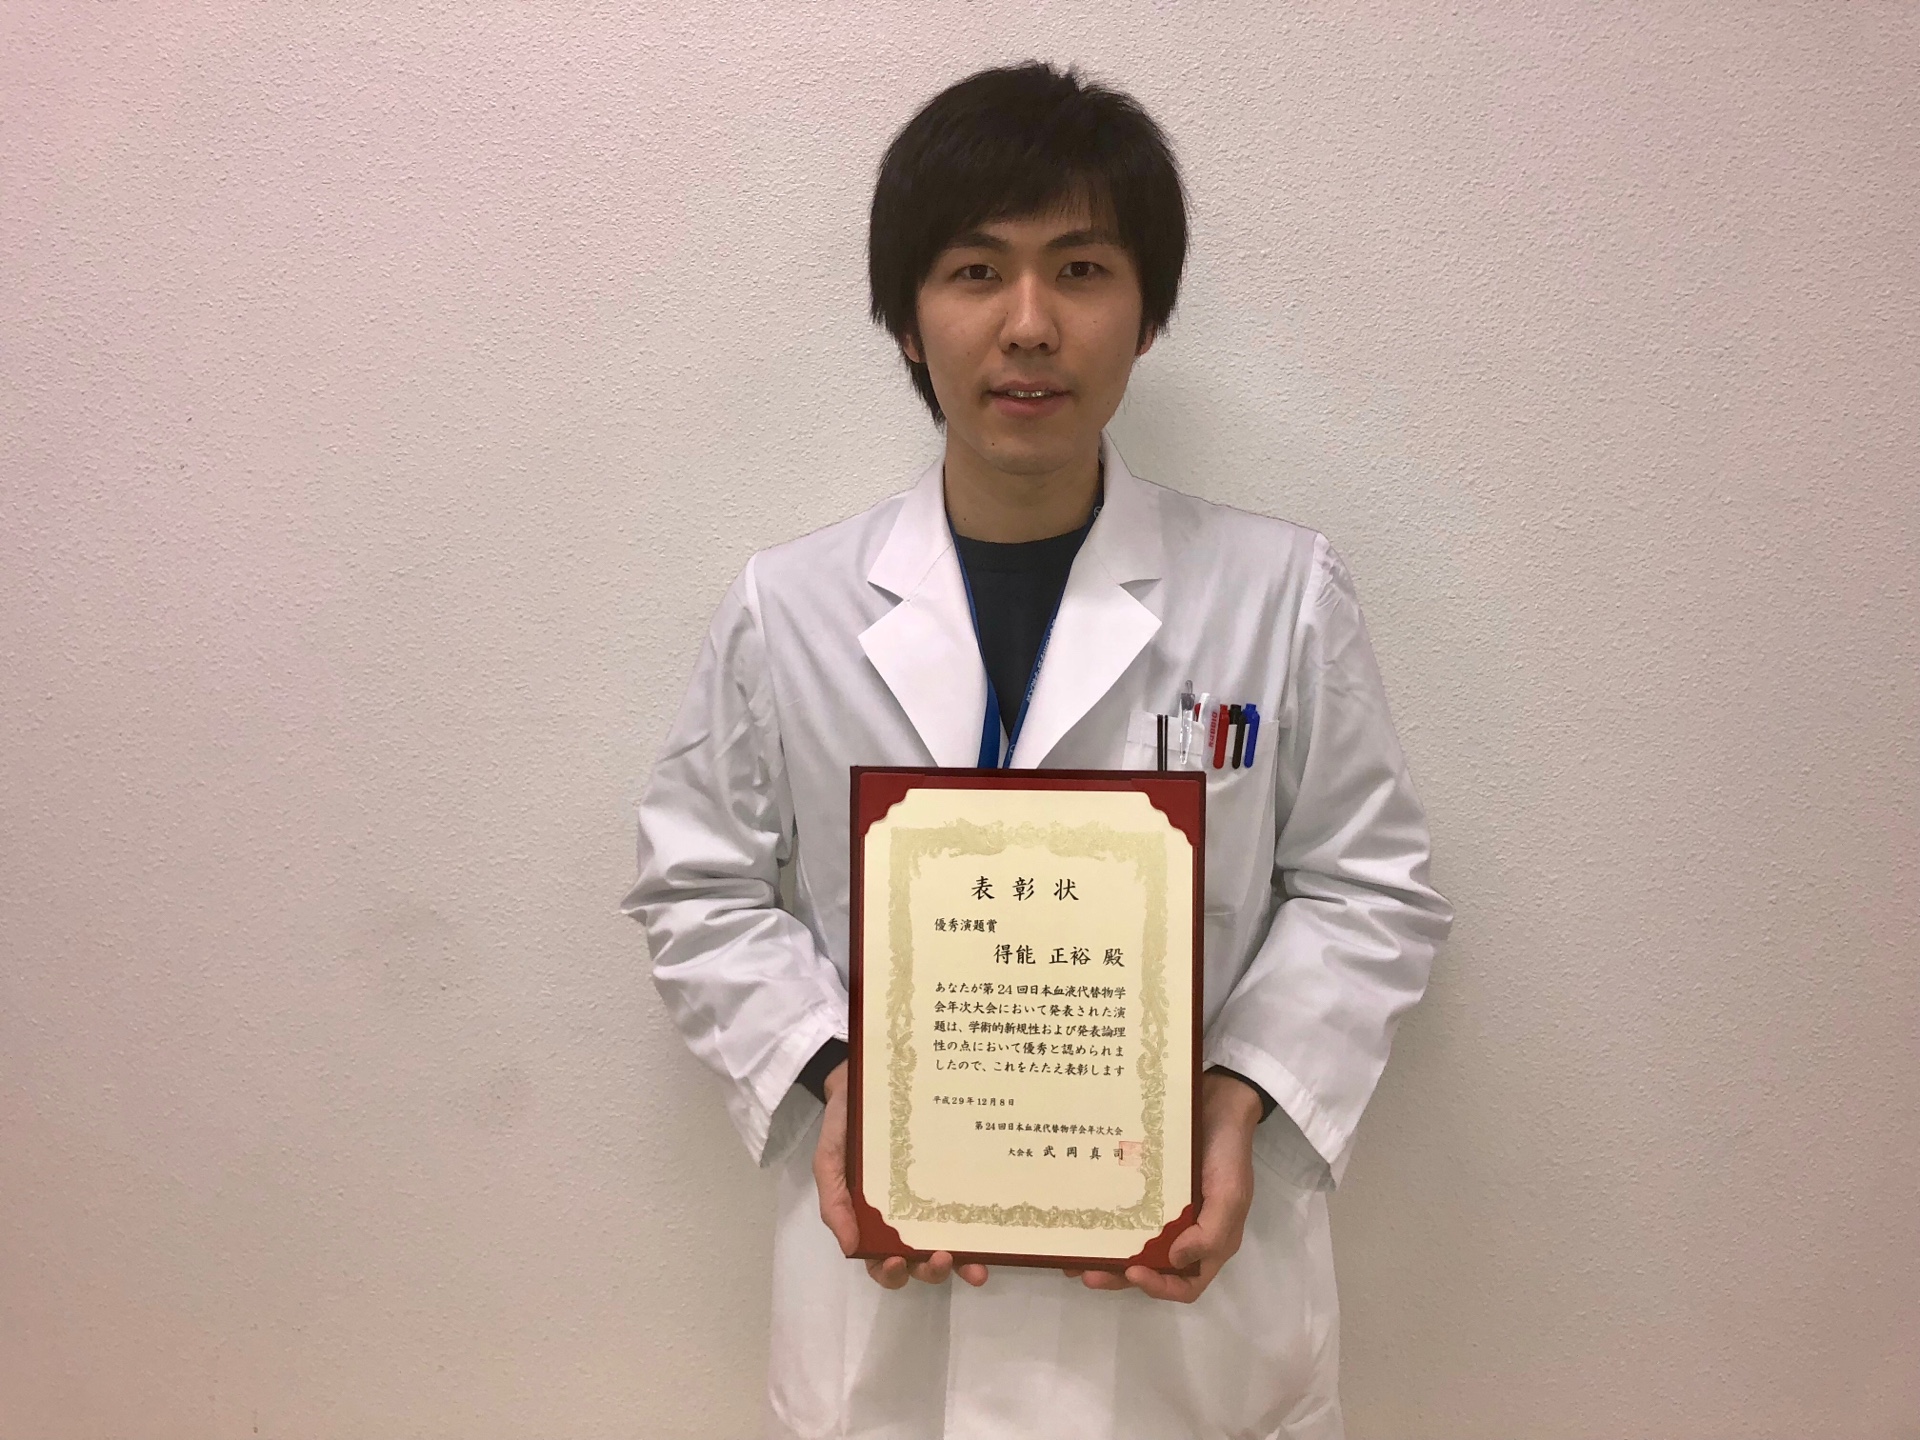 大学院生が日本血液代替物学会で優秀演題賞を受賞